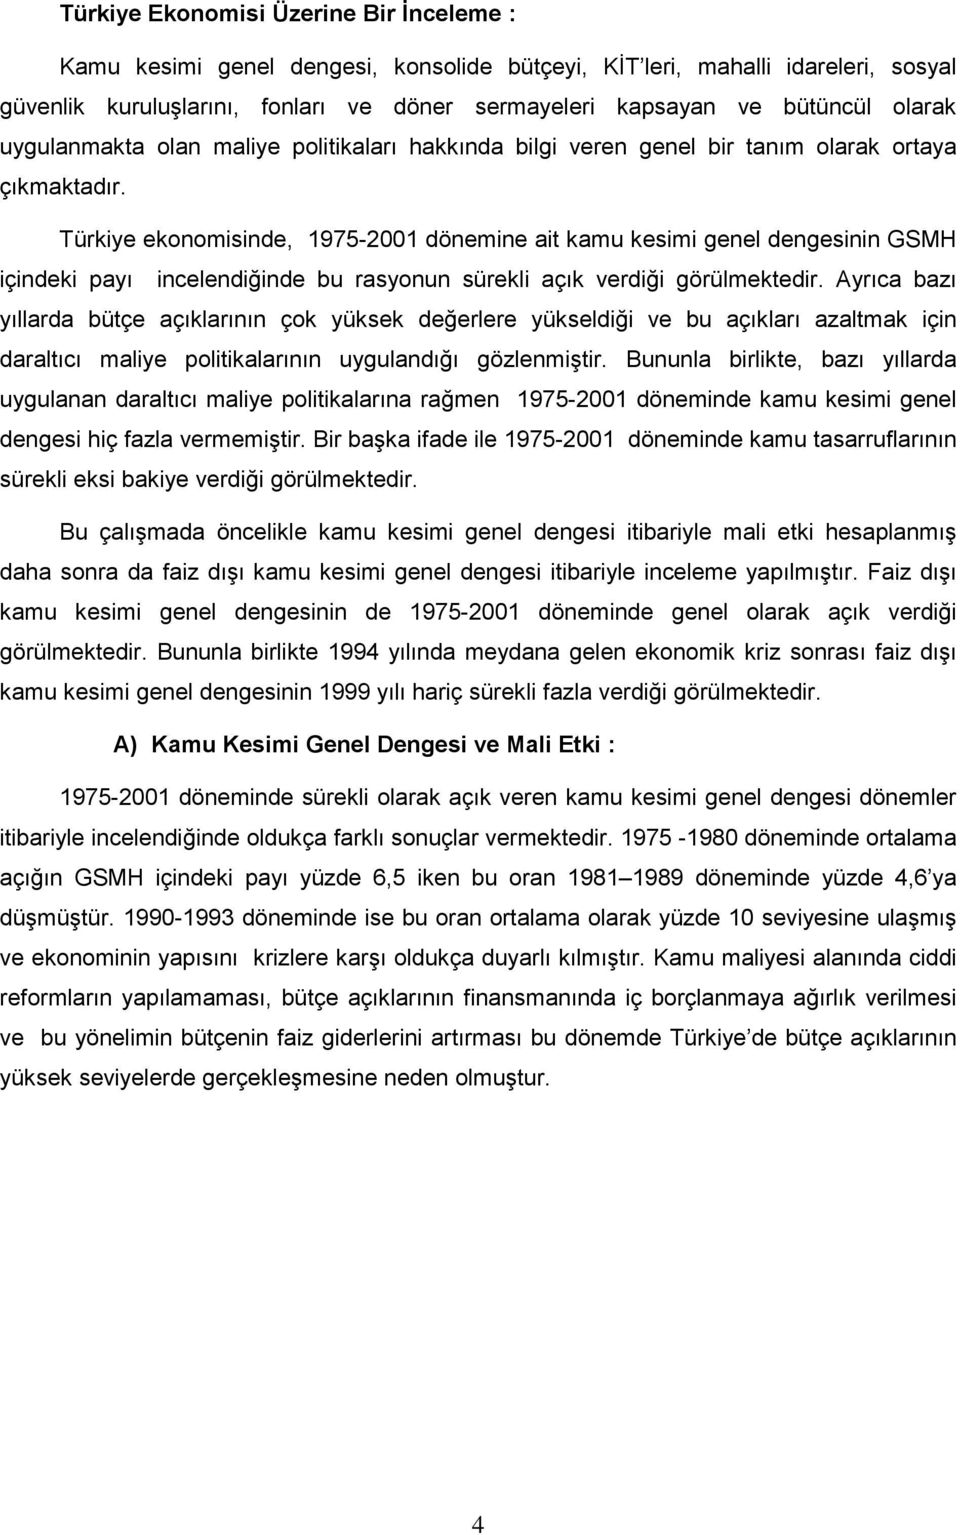 Türkiye ekonomisinde, 1975-2001 dönemine ait kamu kesimi genel dengesinin GSMH içindeki payı incelendiğinde bu rasyonun sürekli açık verdiği görülmektedir.